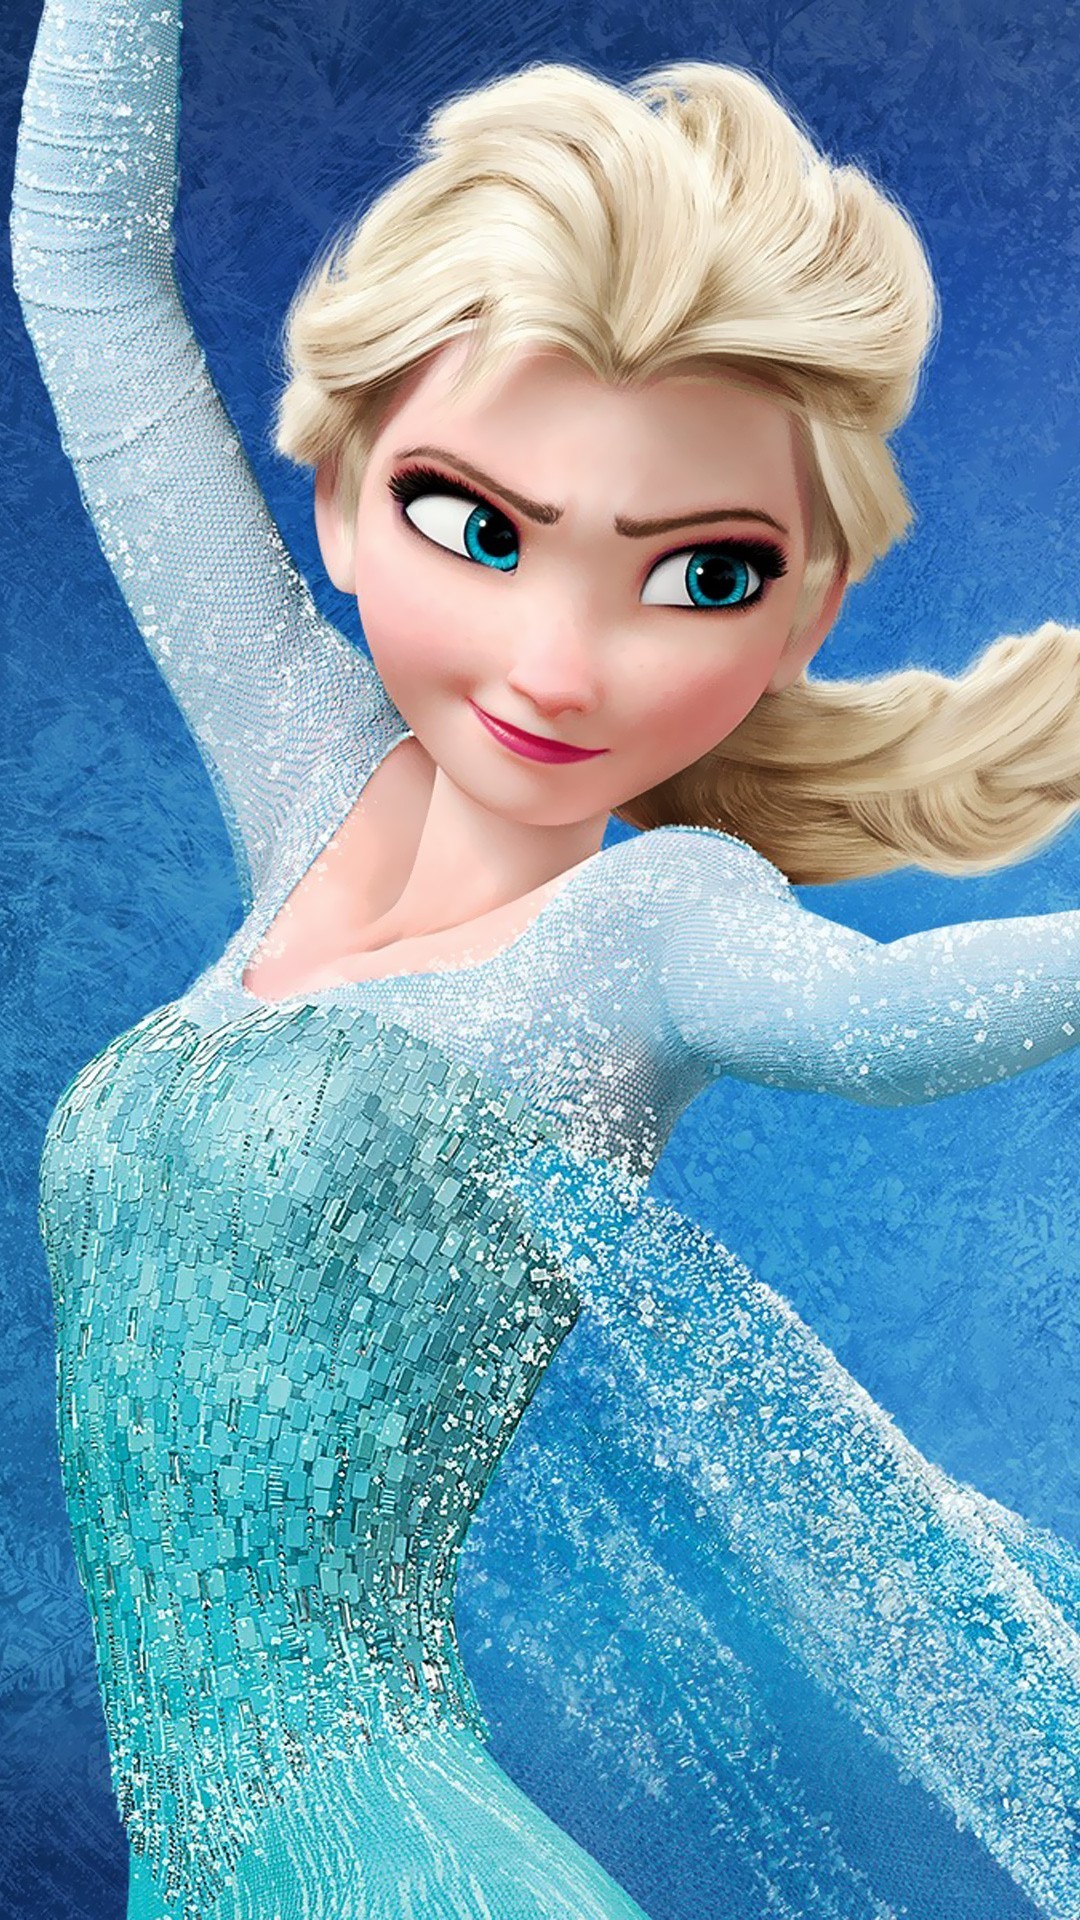 1080x1920 Snow Queen Elsa in Frozen Wallpapers | HD Wallpapers ...